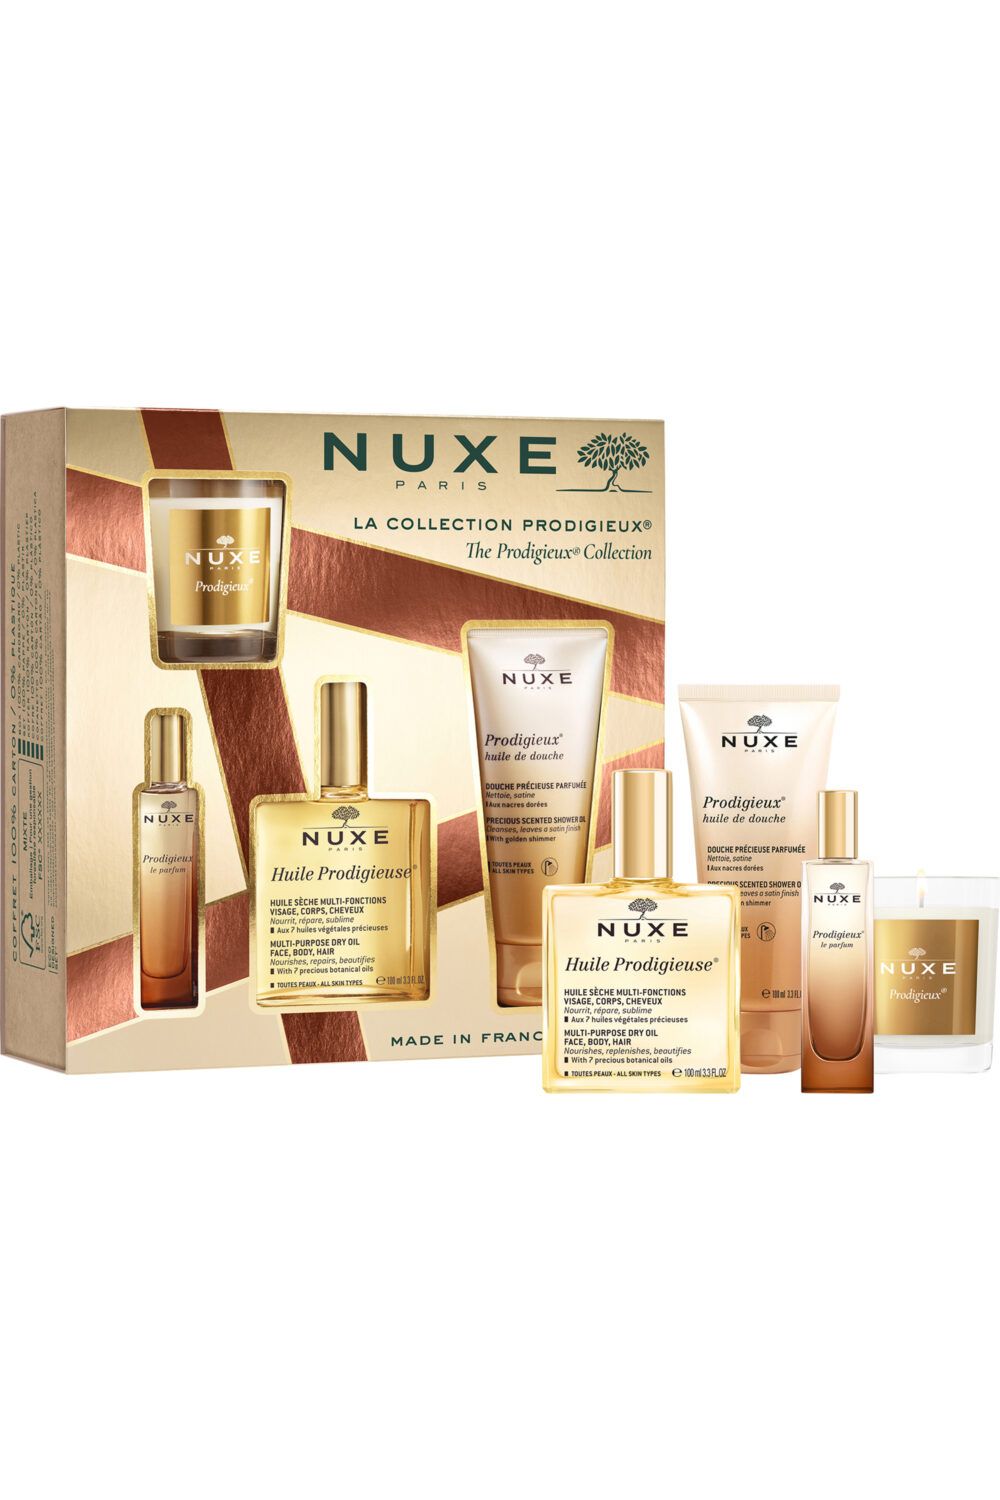 Nuxe - Coffret La Collection Prodigieux® avec l’Huile Prodigieuse 100ml